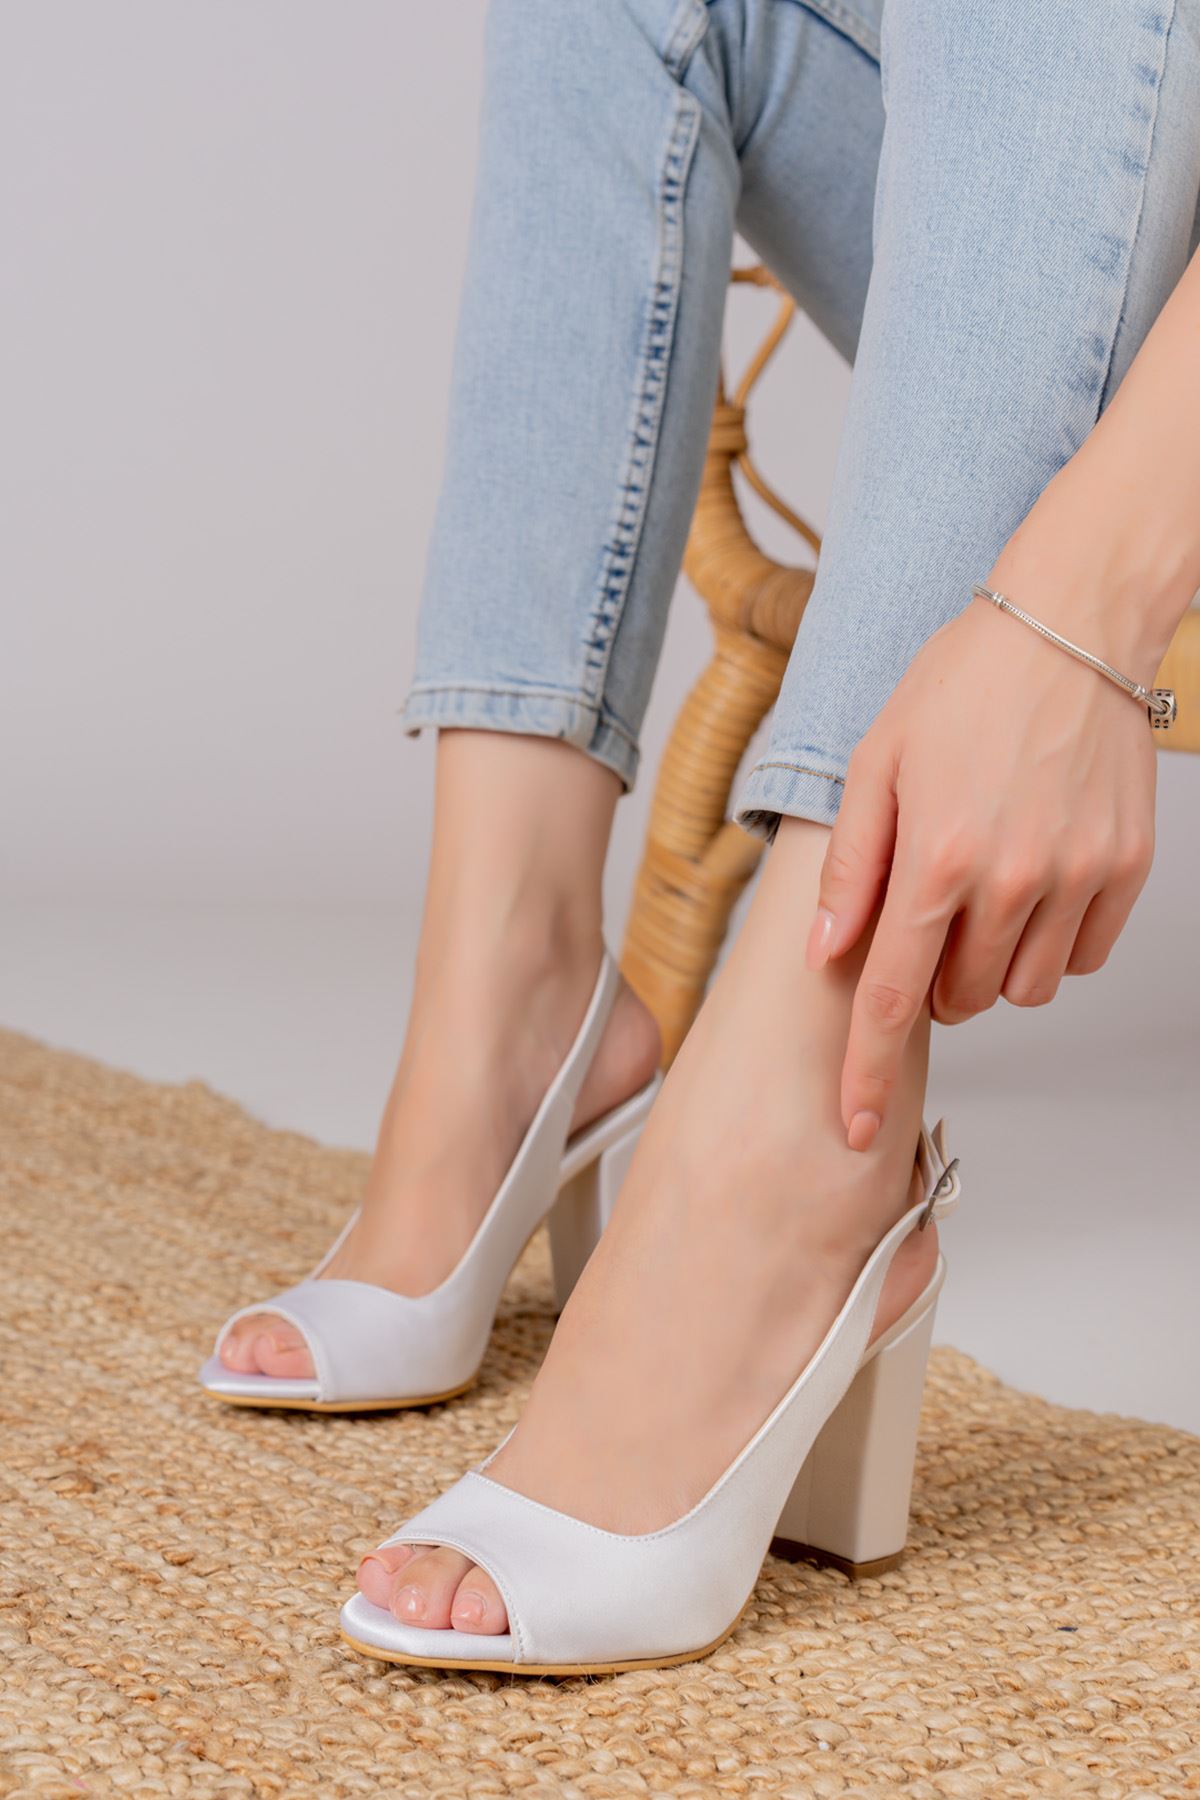 Meira Beyaz Saten Detaylı Yüksek Topuklu Kadın Ayakkabı   